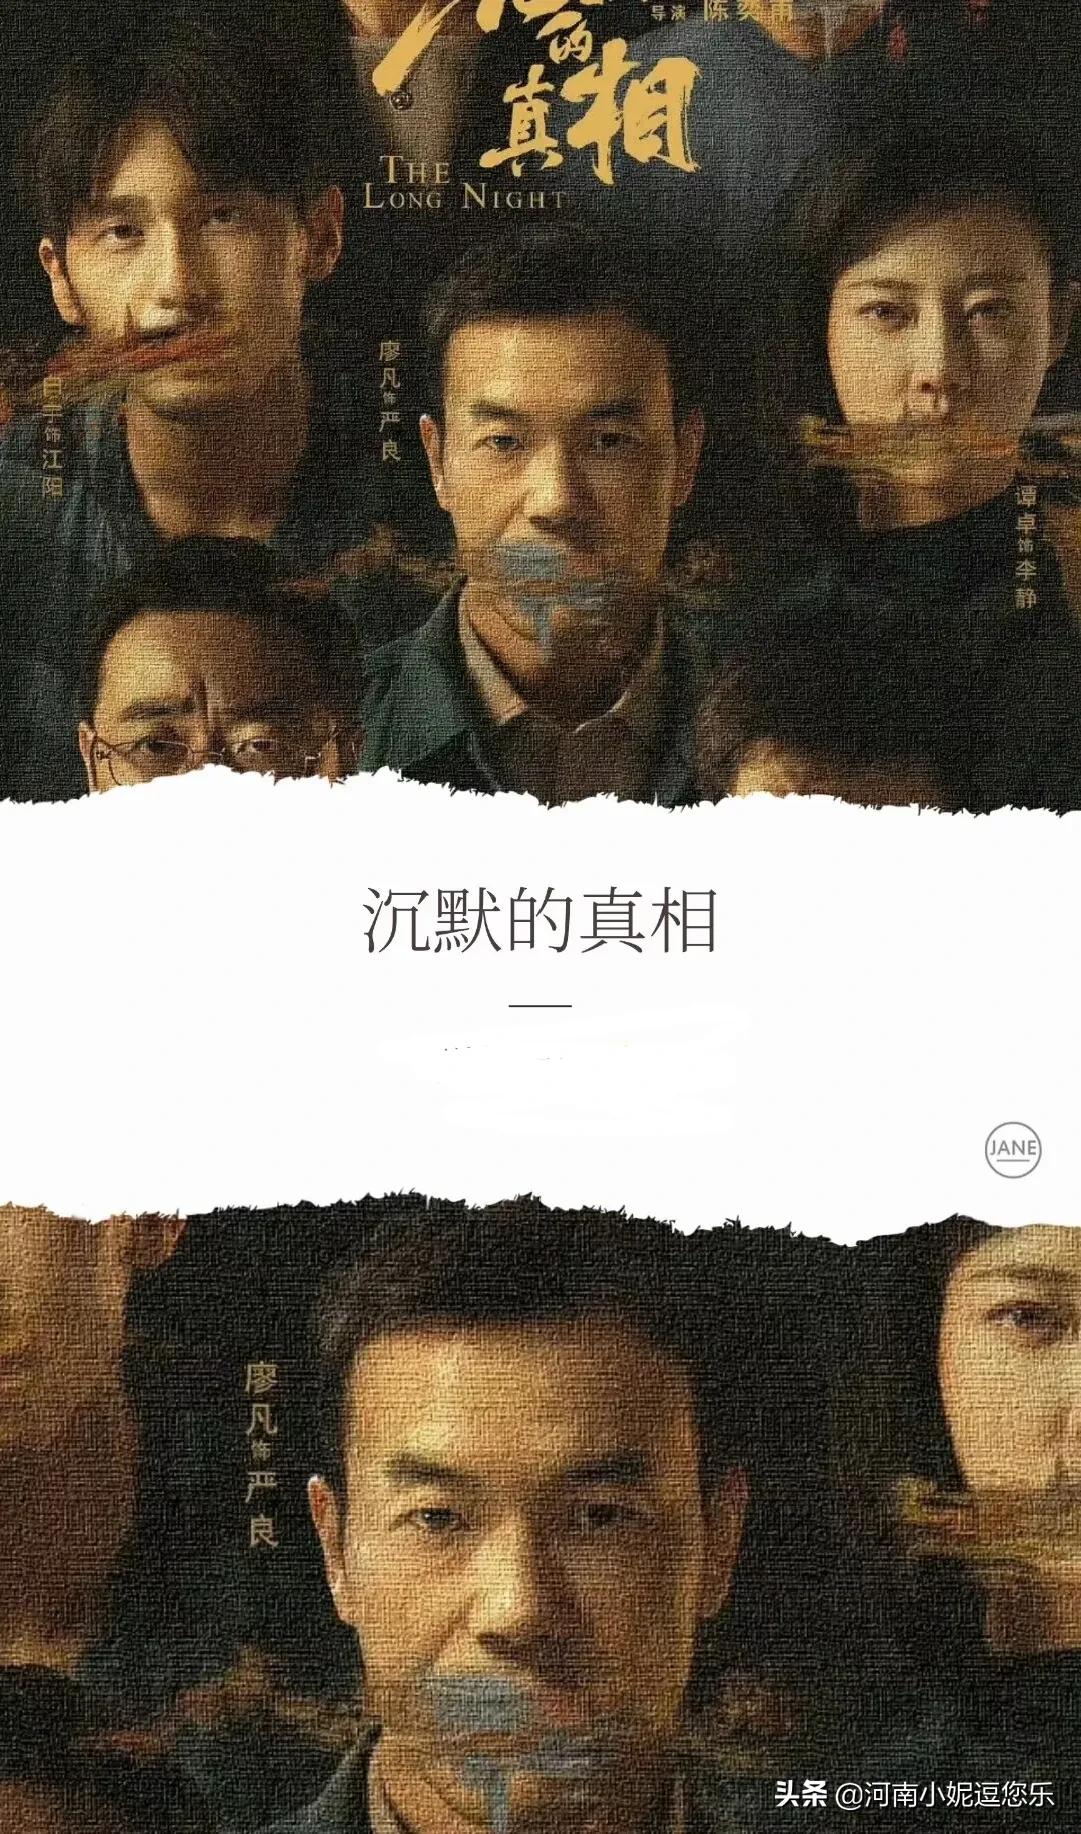 2022年强力推荐15部悬疑犯罪电视剧李易峰廖凡赵丽颖一定有你想看的东西。